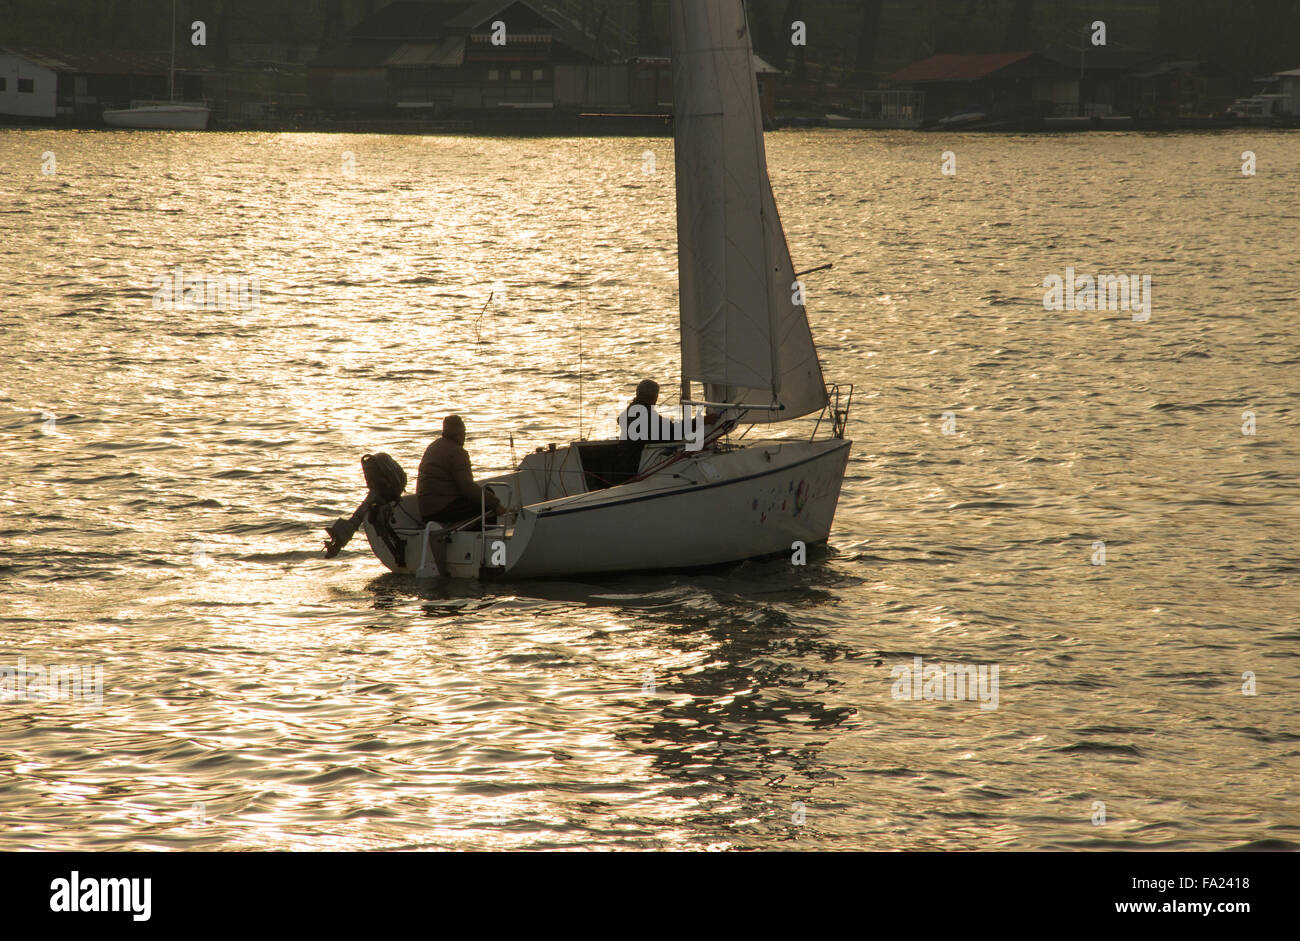 A Belgrado, in Serbia - Due colleghi godetevi la vela in un micro-class yacht in un assolato pomeriggio autunnale presso il fiume Sava Foto Stock